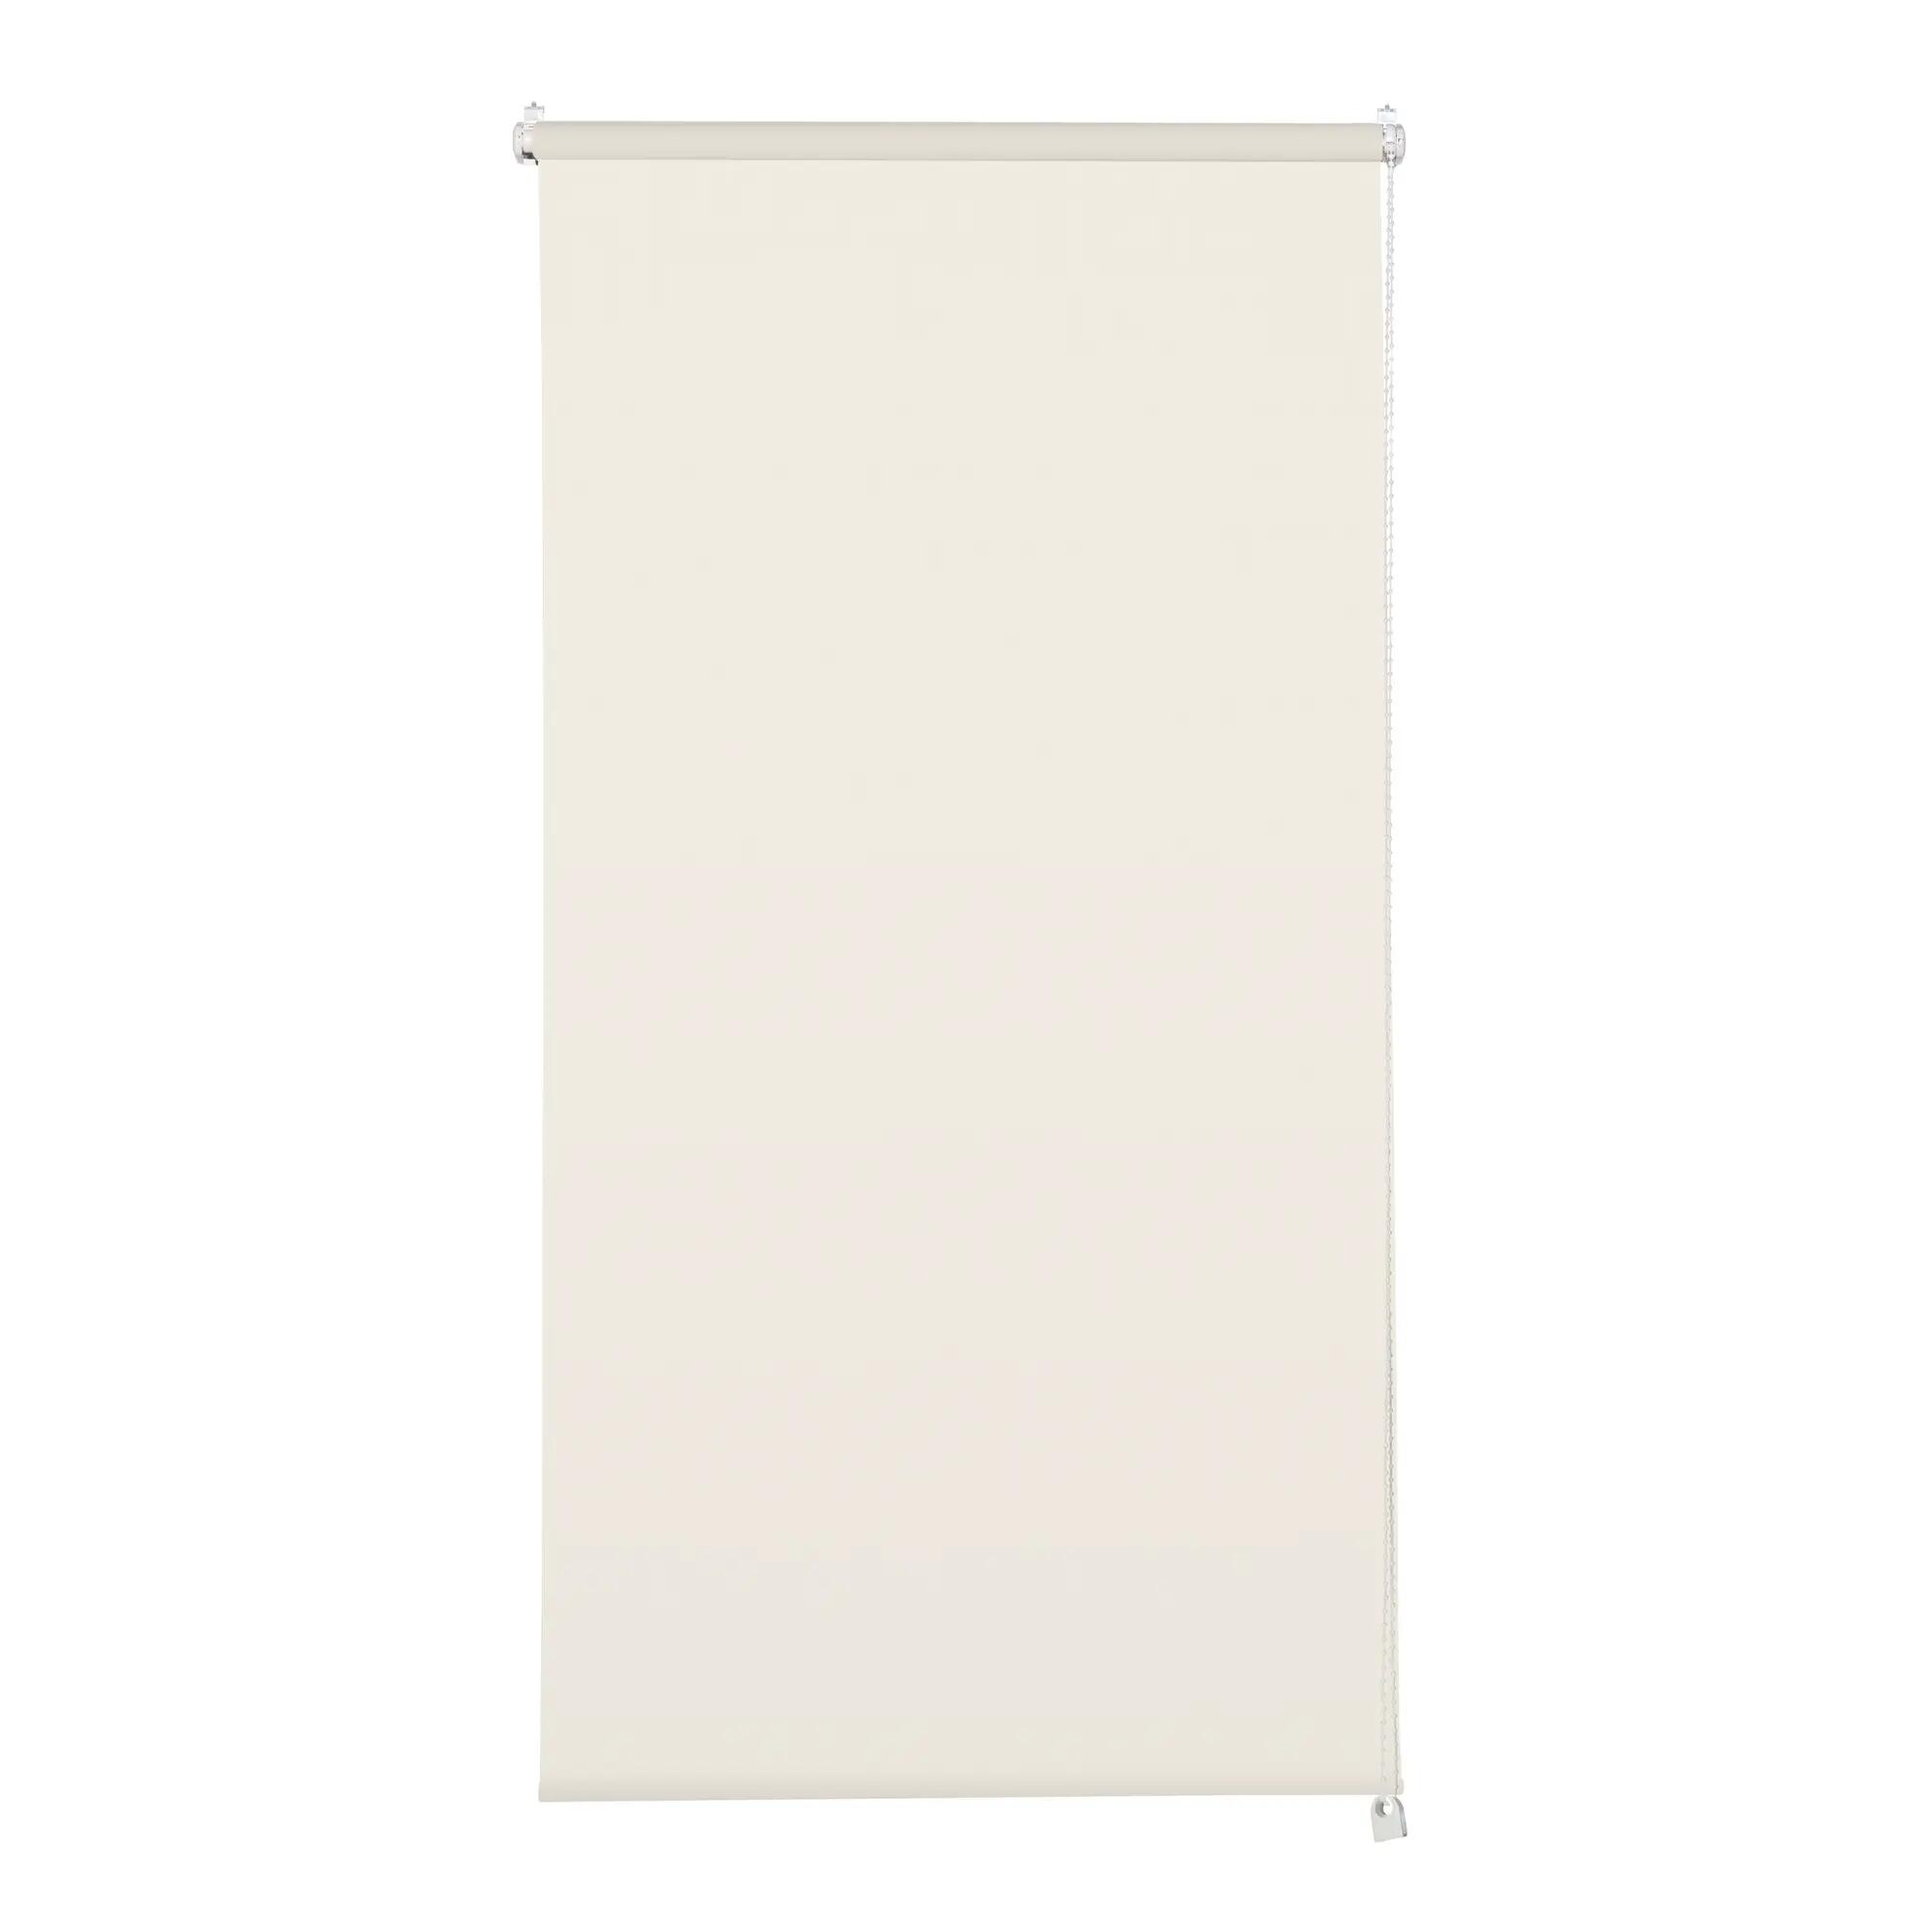 Tenda a rullo filtrante INSPIRE Screen lino 105 x 250 cm - 1